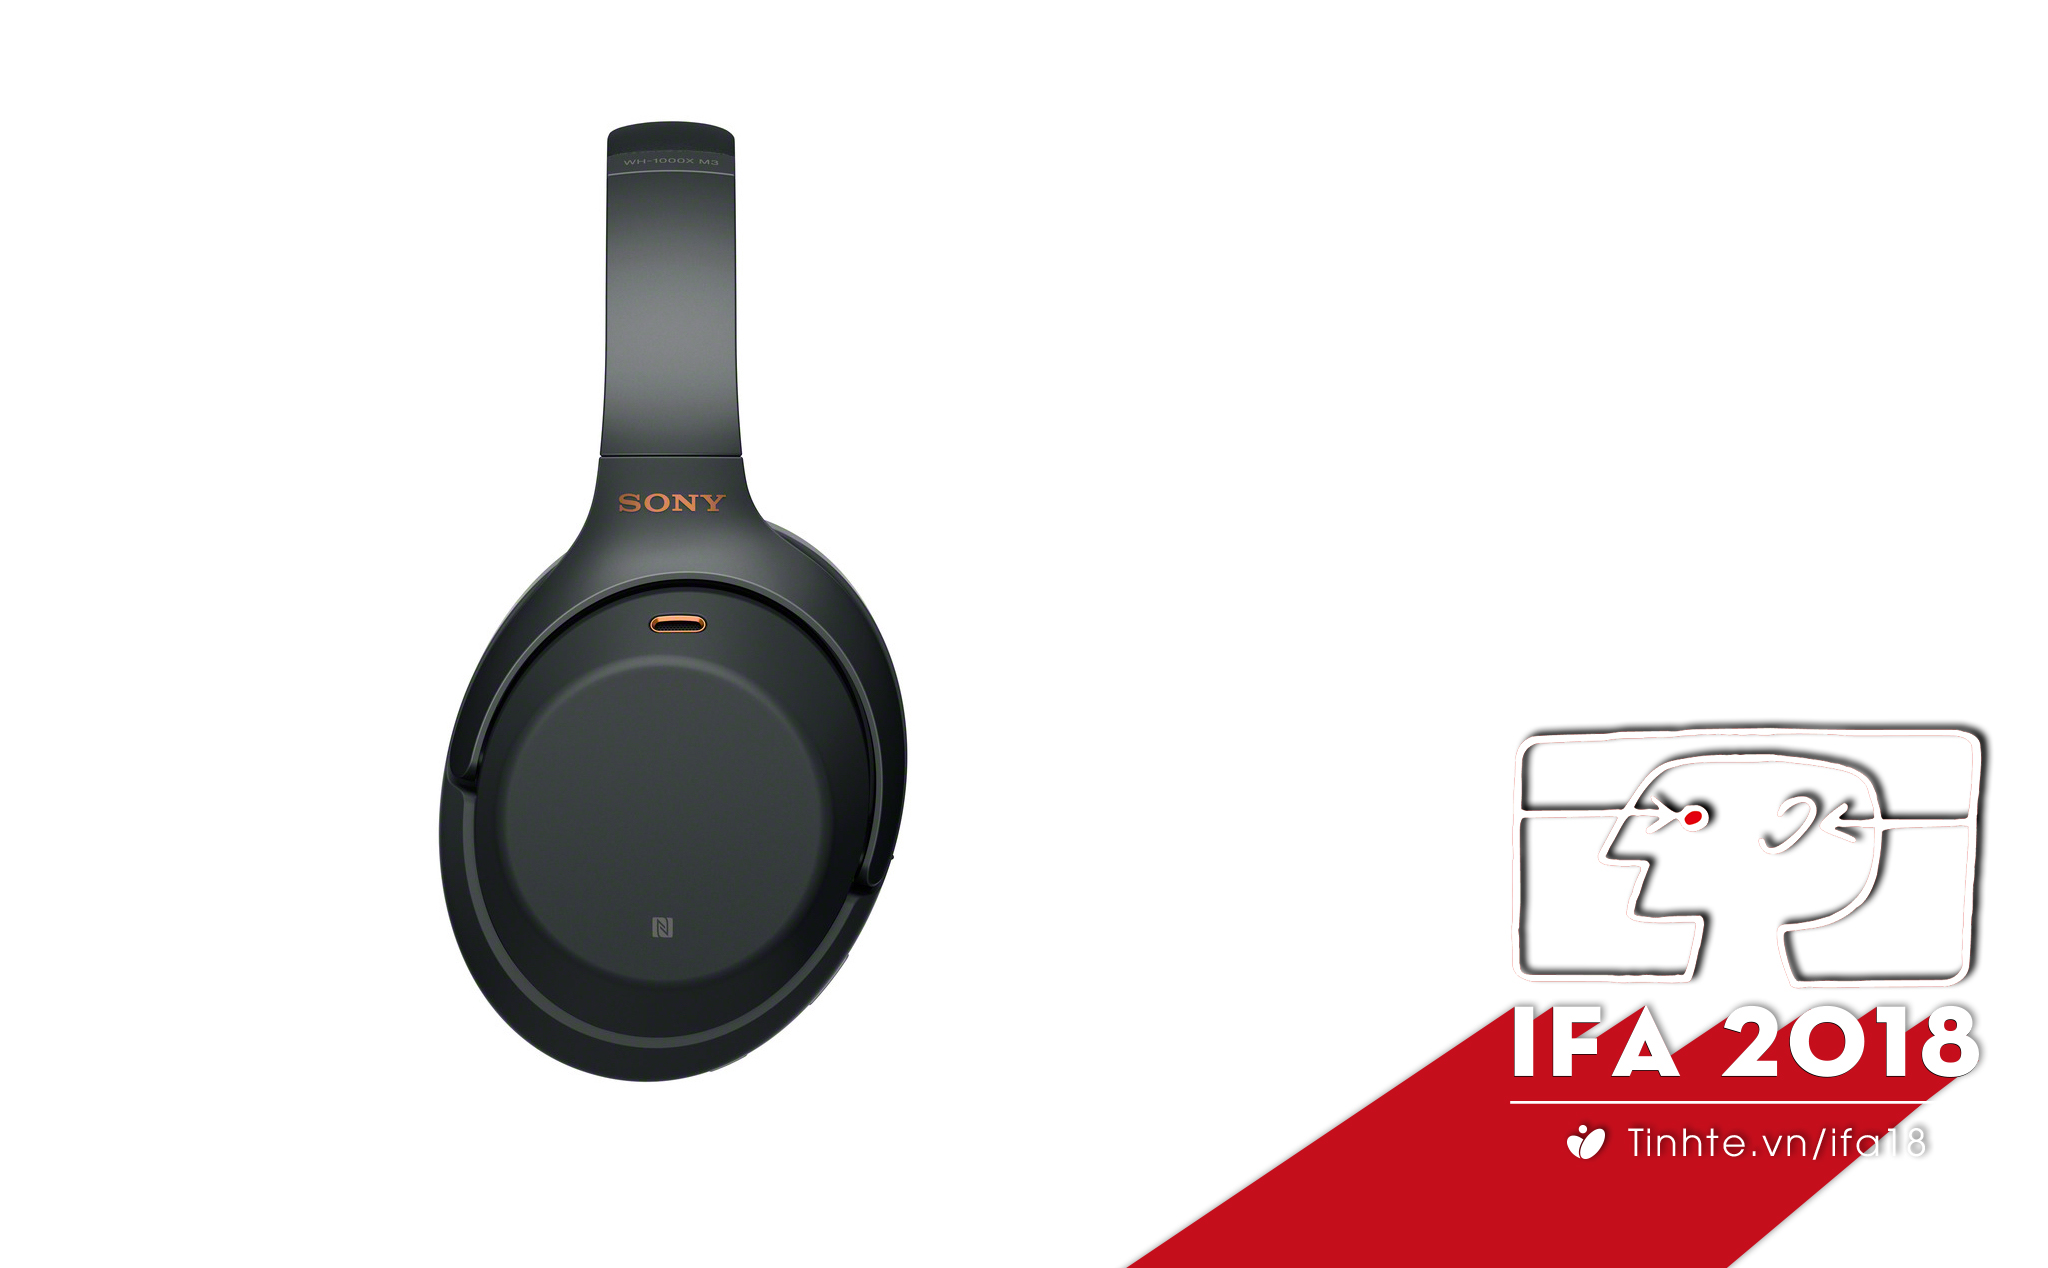 #IFA18: Sony nâng cấp tai nghe WH-1000XM3, chống ồn tốt hơn 4 lần